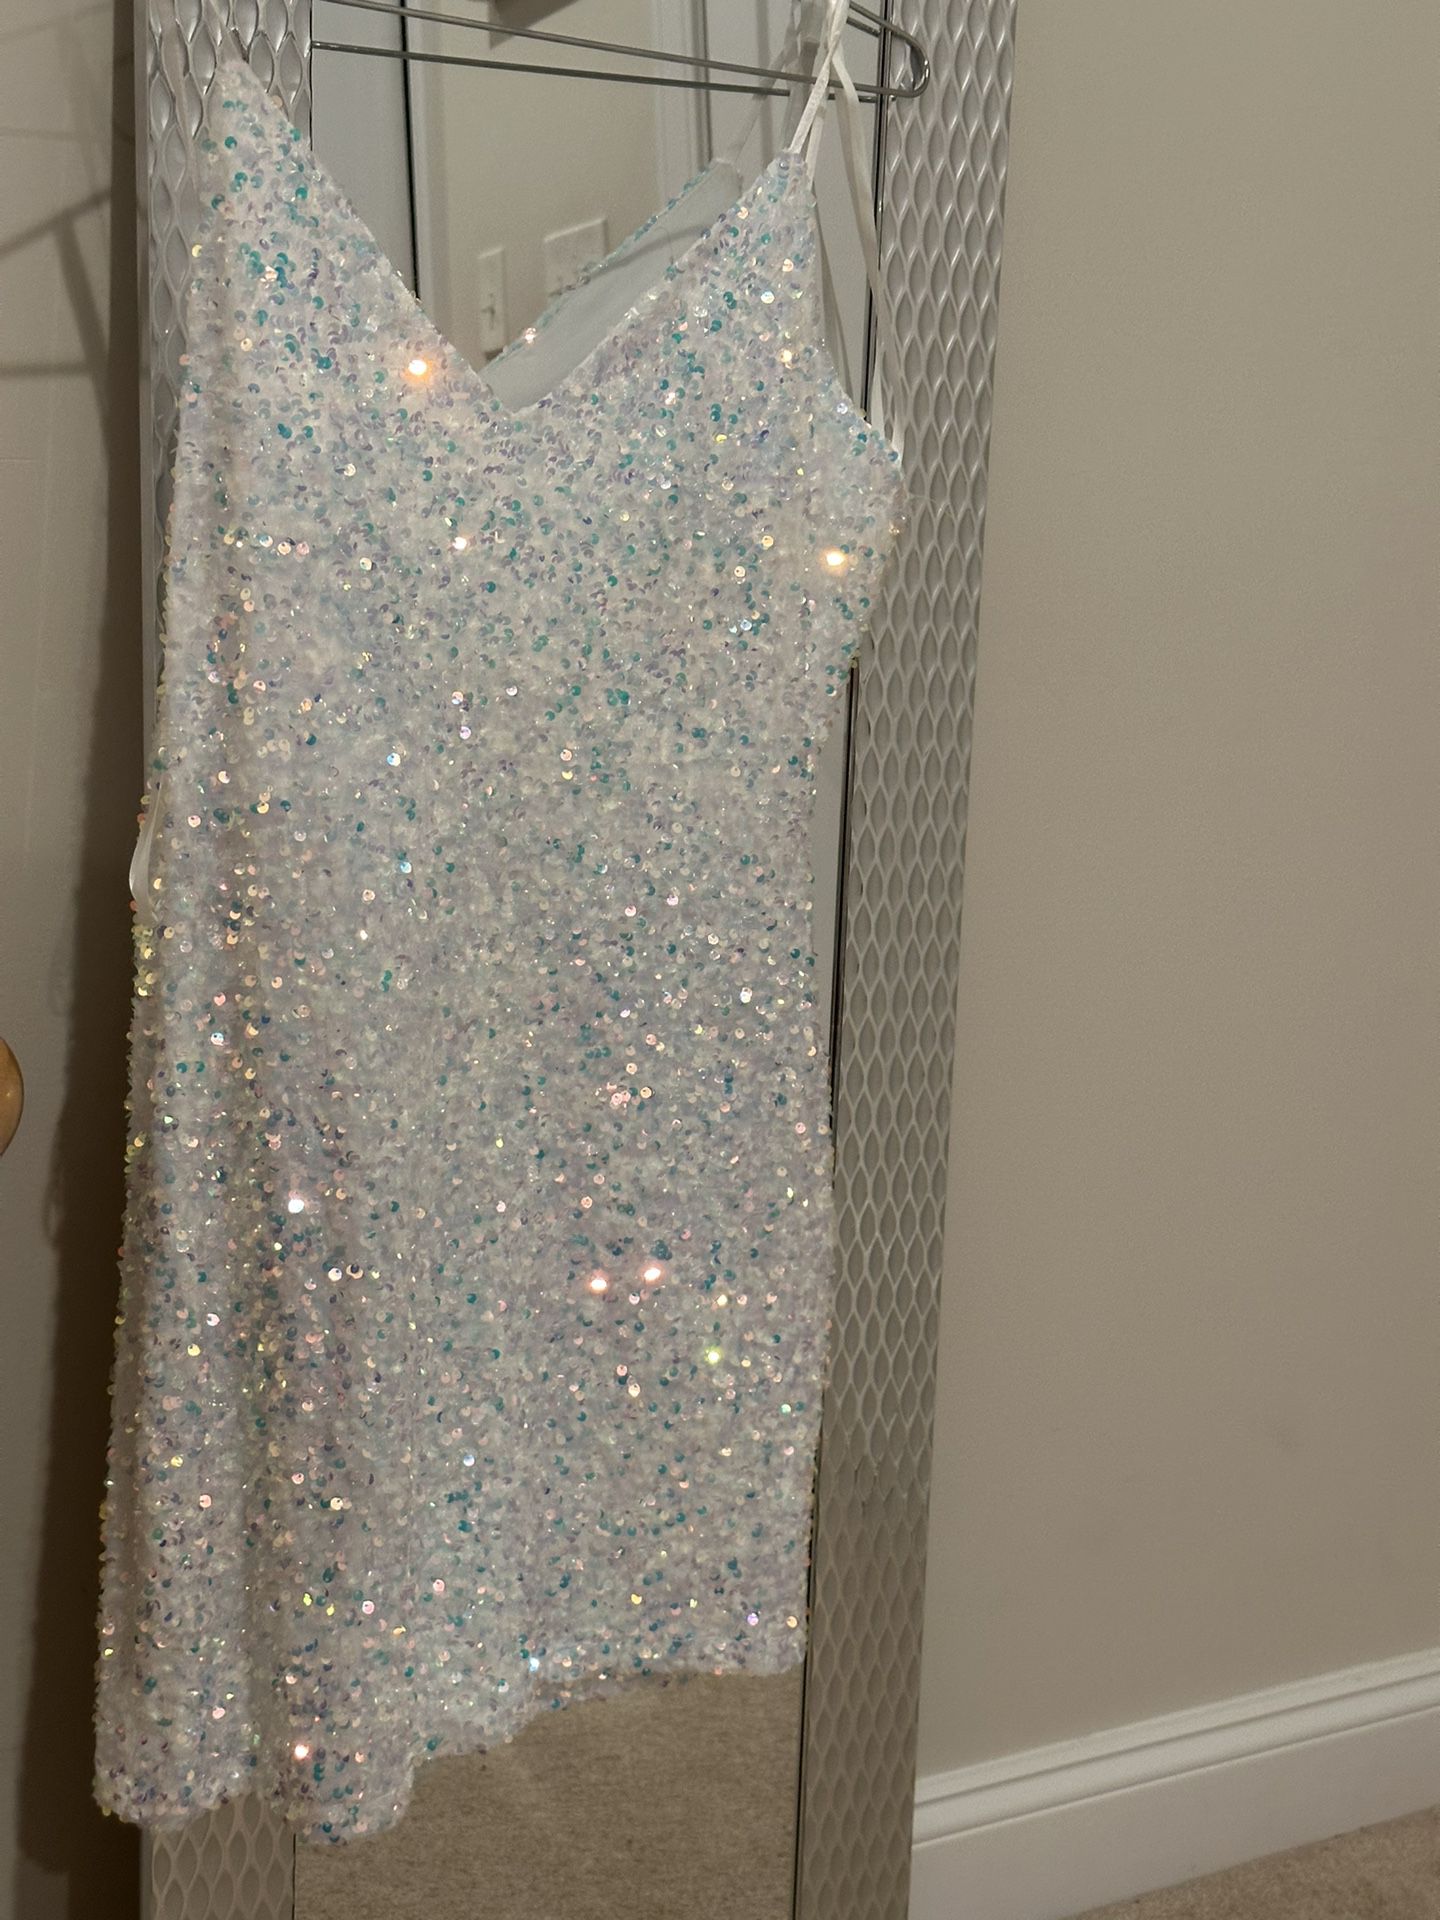 Glitter Dress XL